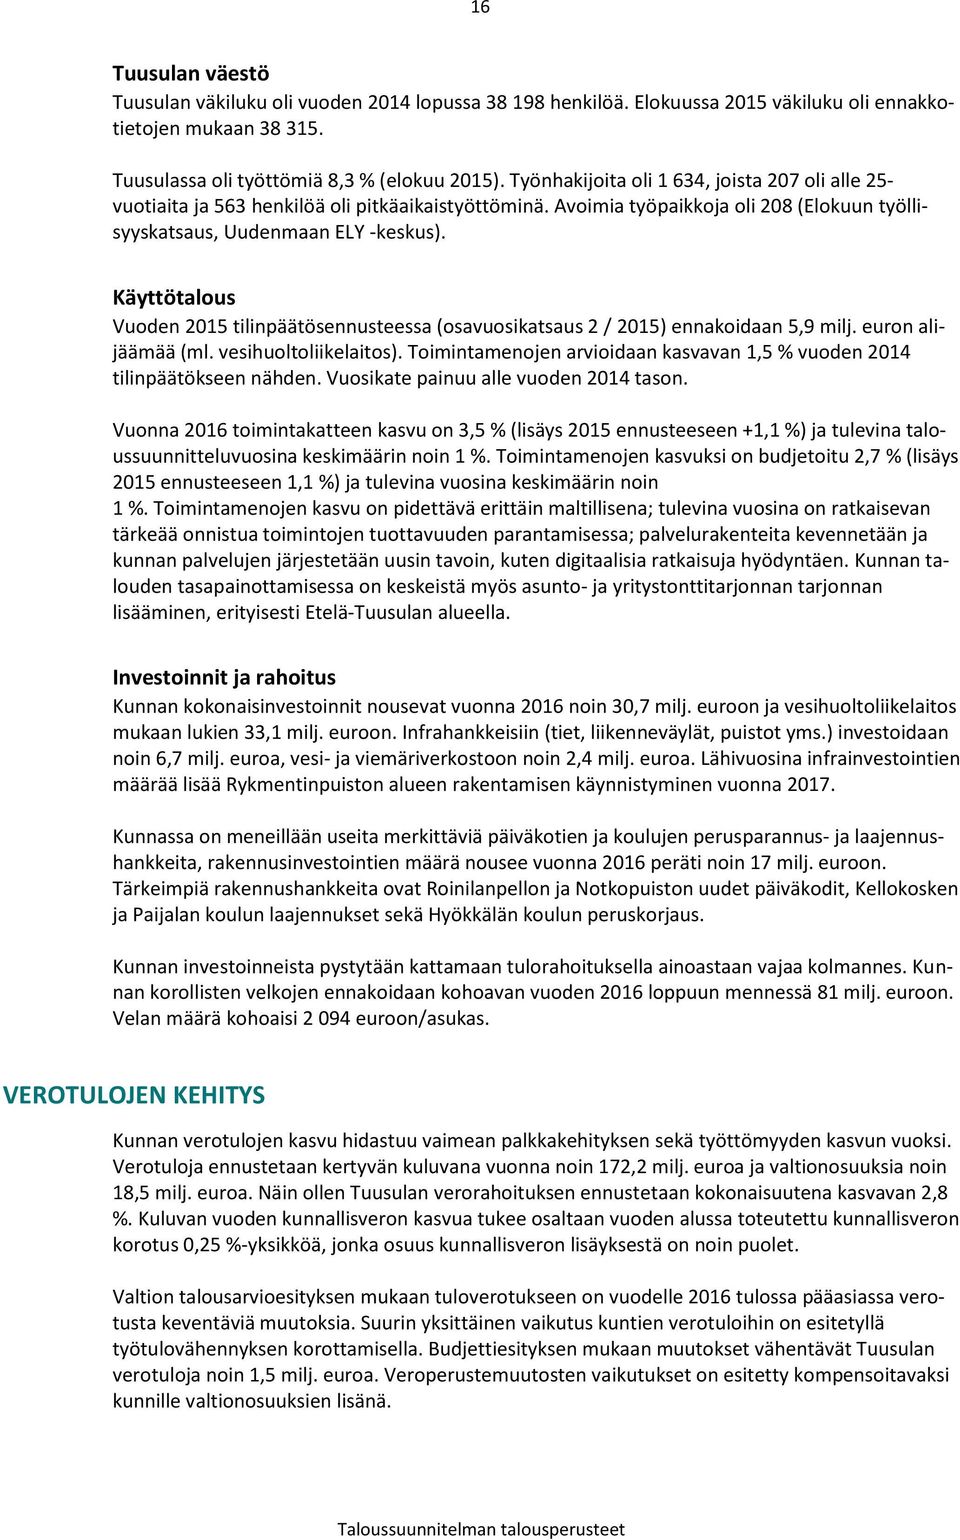 Käyttötalous Vuoden 2015 tilinpäätösennusteessa (osavuosikatsaus 2 / 2015) ennakoidaan 5,9 milj. euron alijäämää (ml. vesihuoltoliikelaitos).